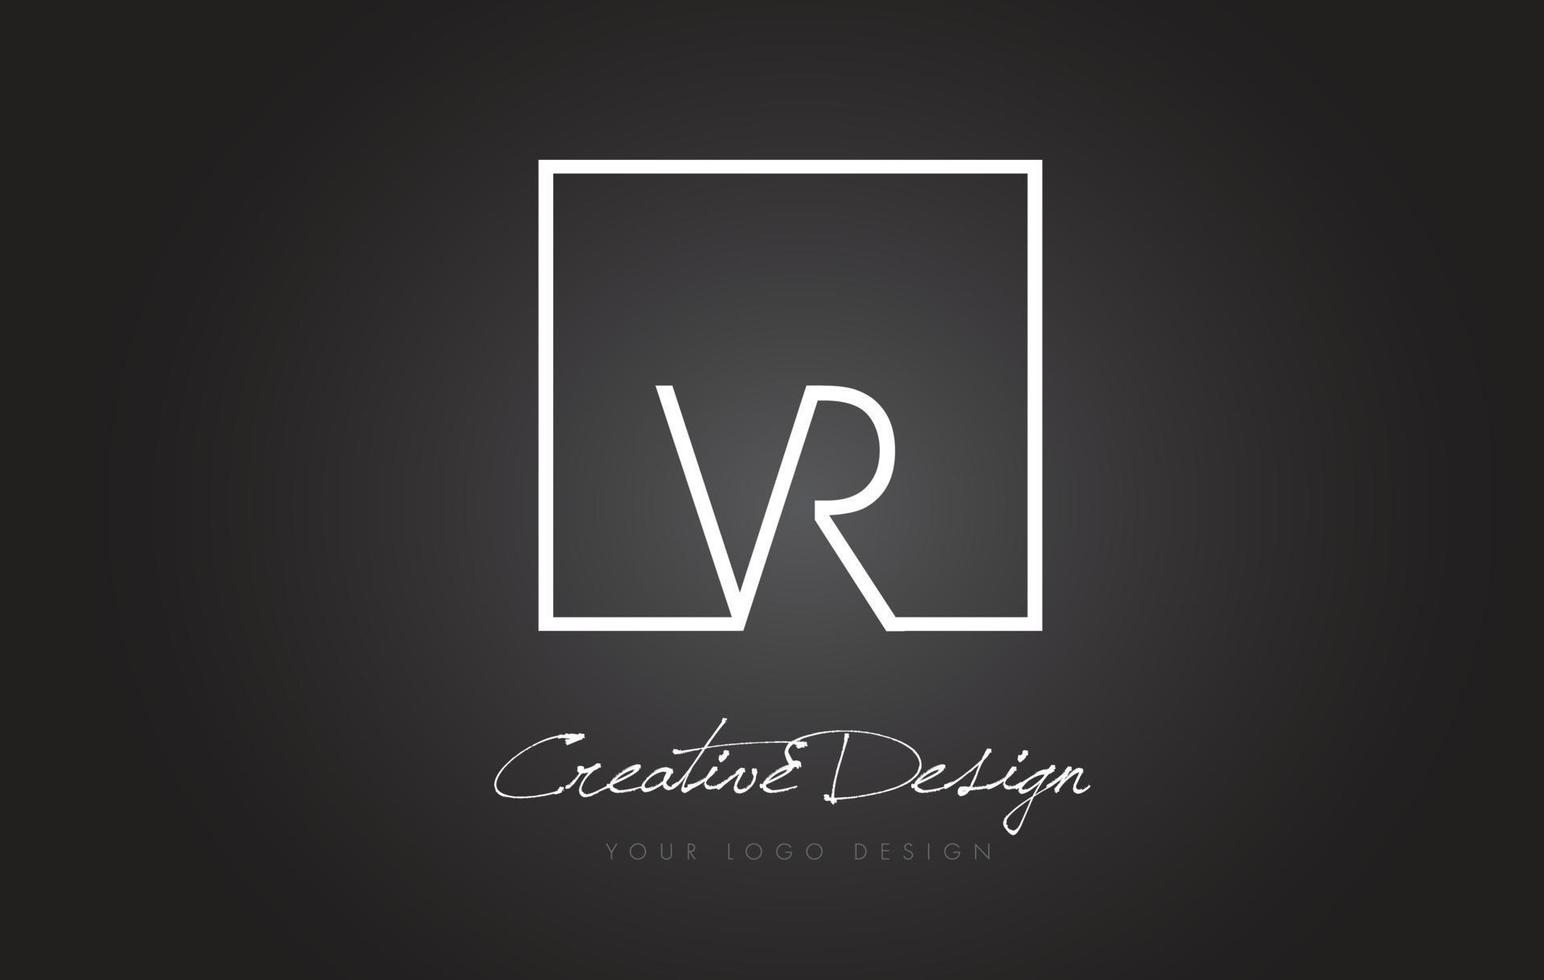 création de logo de lettre de cadre carré vr avec des couleurs noir et blanc. vecteur